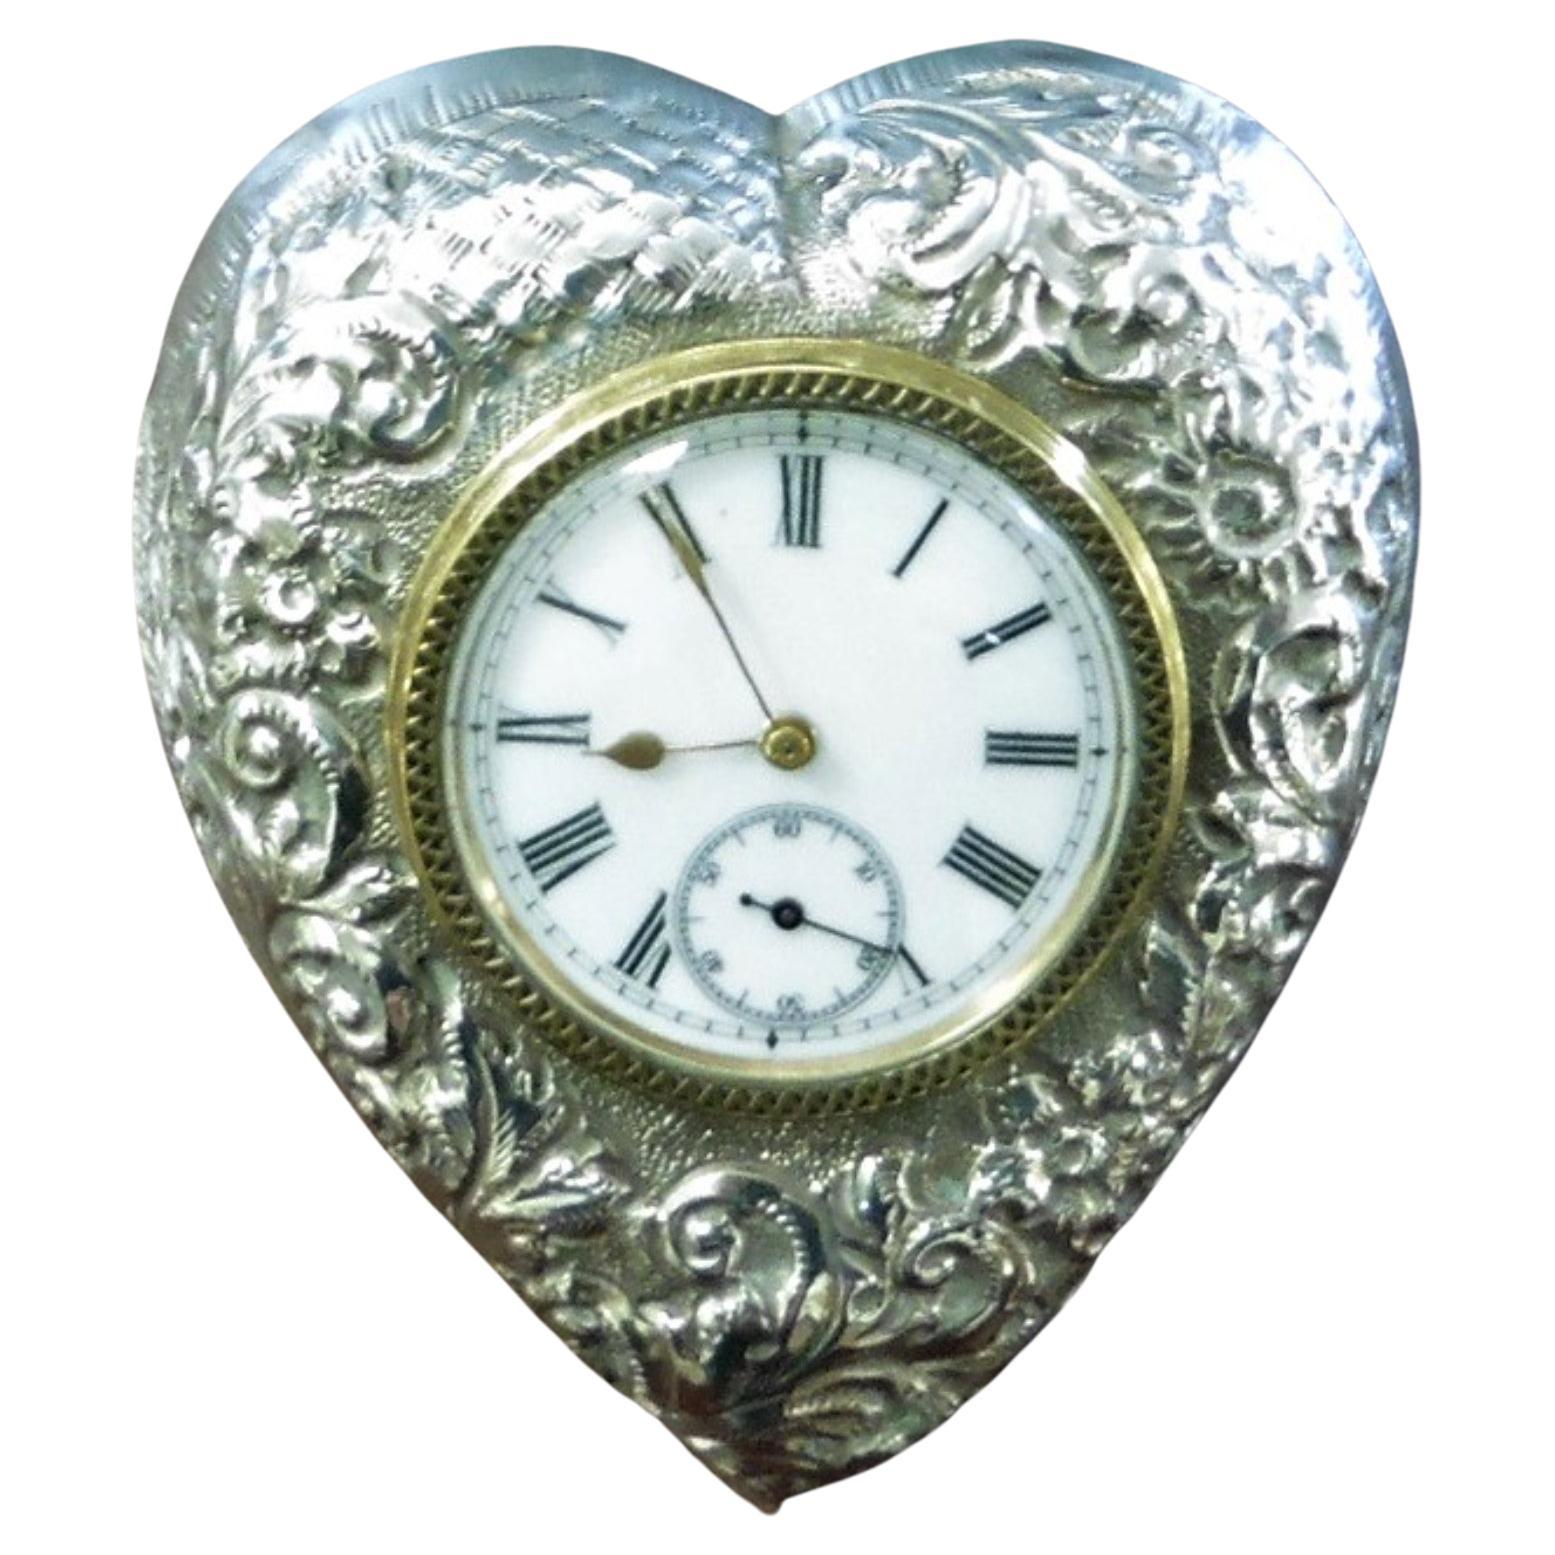 Horloge structurée victorienne en argent en forme de cœur